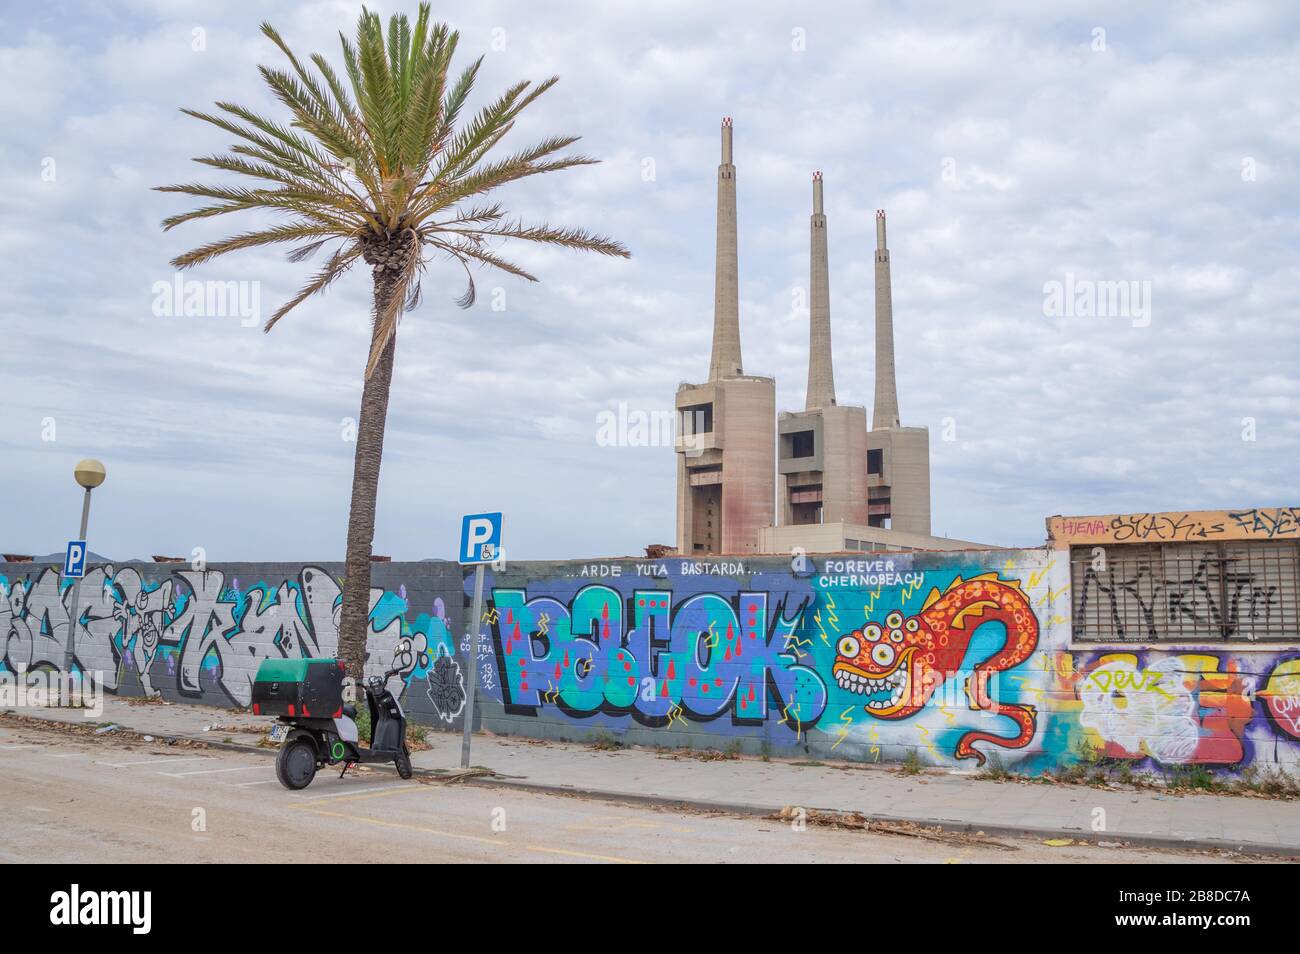 Tres Chimeneas di Sant Adrià de Besòs o i tre camini di una centrale termica smantellata a Sant Adrià de Besòs, nei pressi di Barcellona Foto Stock